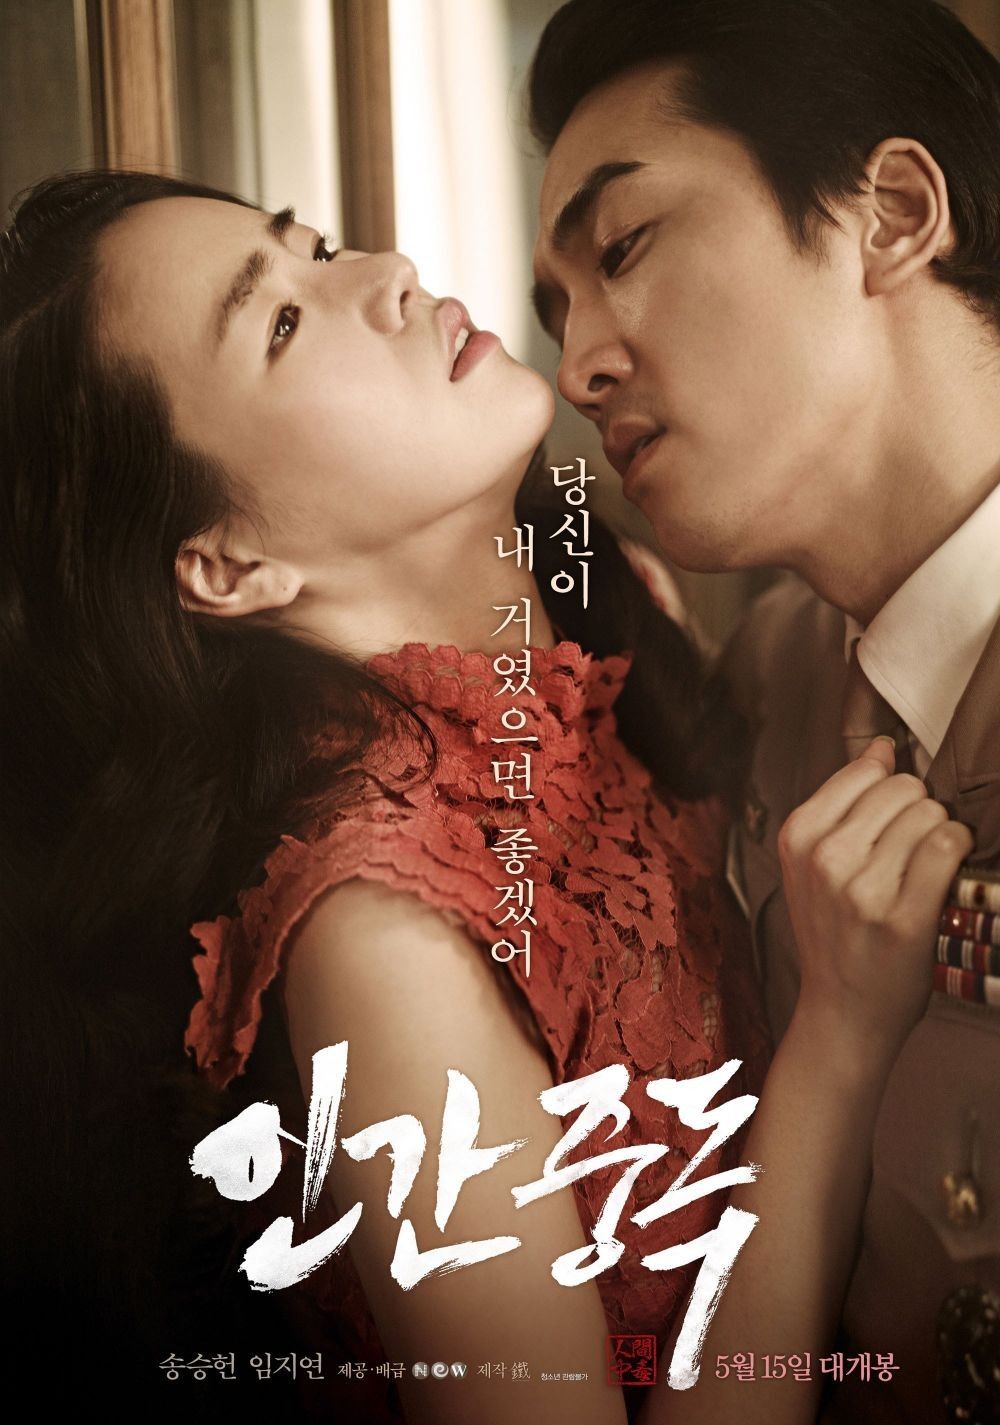 13 Film Dewasa Korea Terbaik yang Tersisip Adegan Seks, Hot!